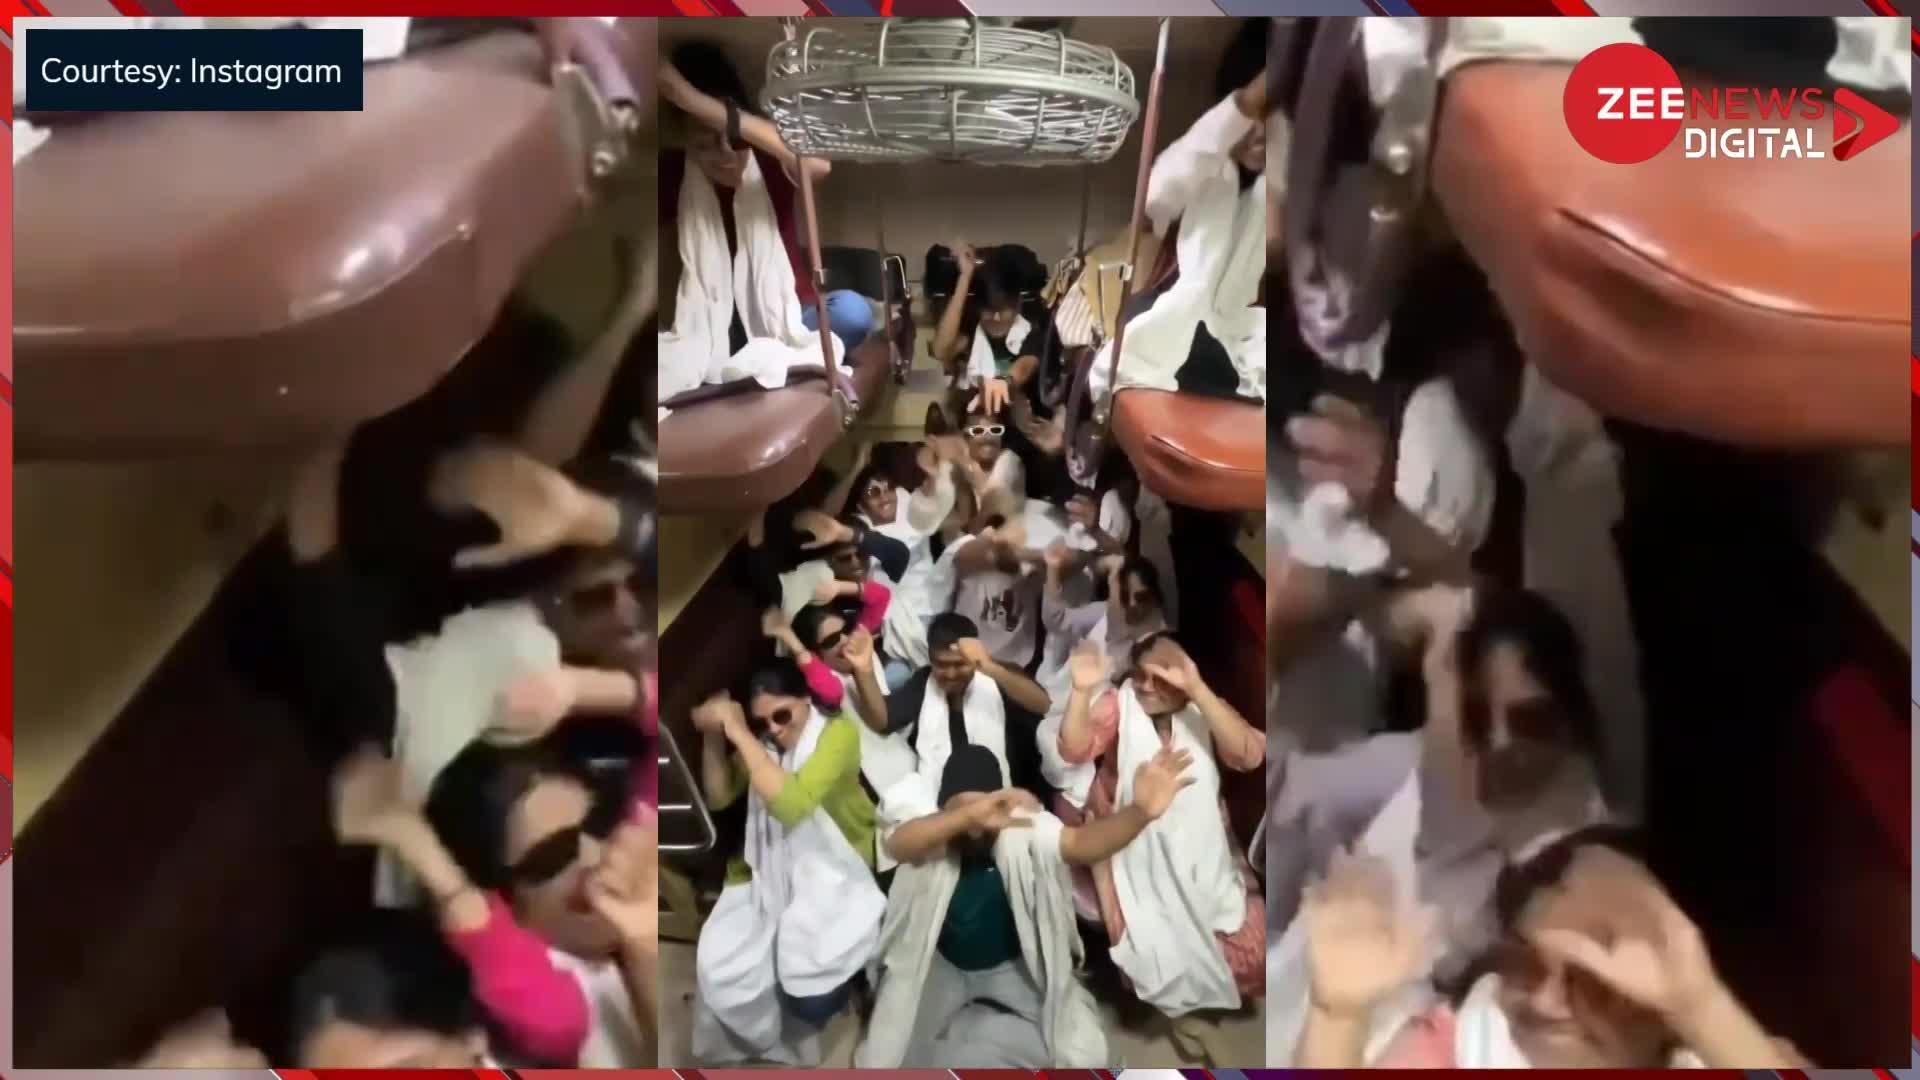 आरती कुंज बिहारी की...धुन पर दिखाए जबरदस्त डांस स्टेप्स, ट्रेन में झूम उठे यात्री